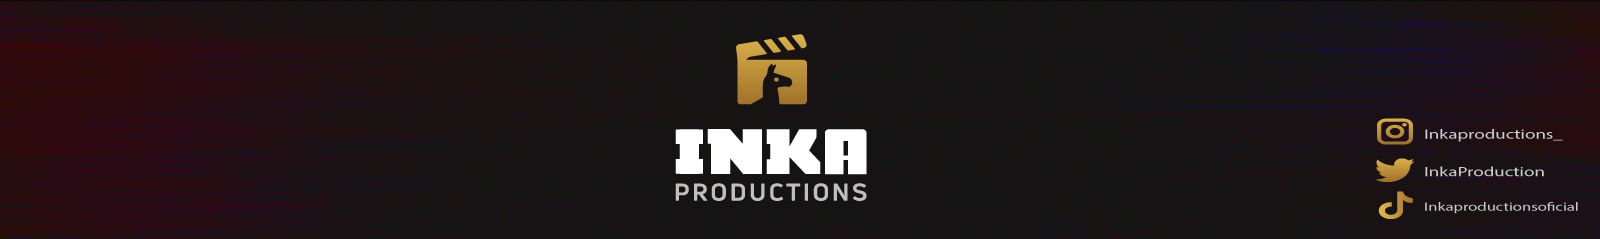 Inka productions